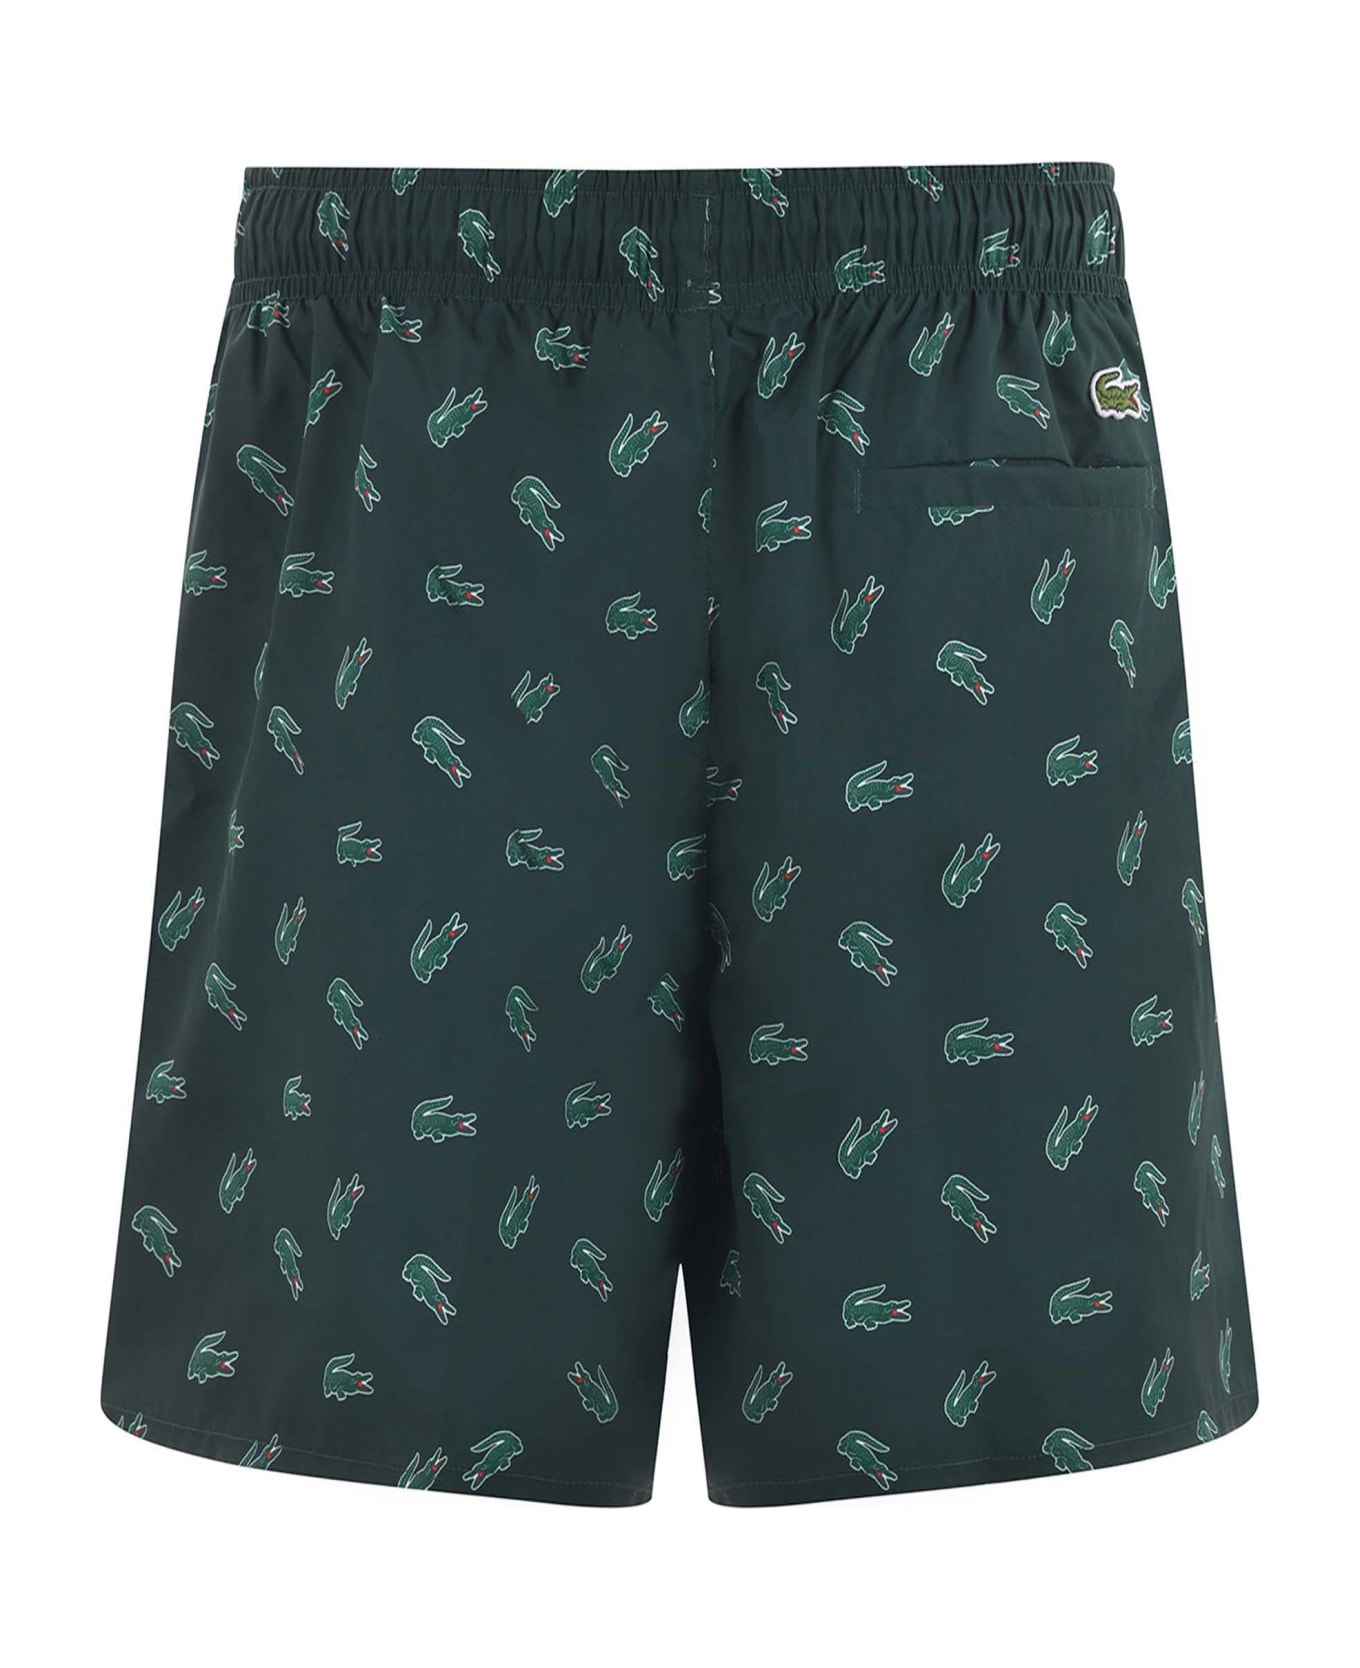 Lacoste Nylon Swimsuit - Verde scuro 水着